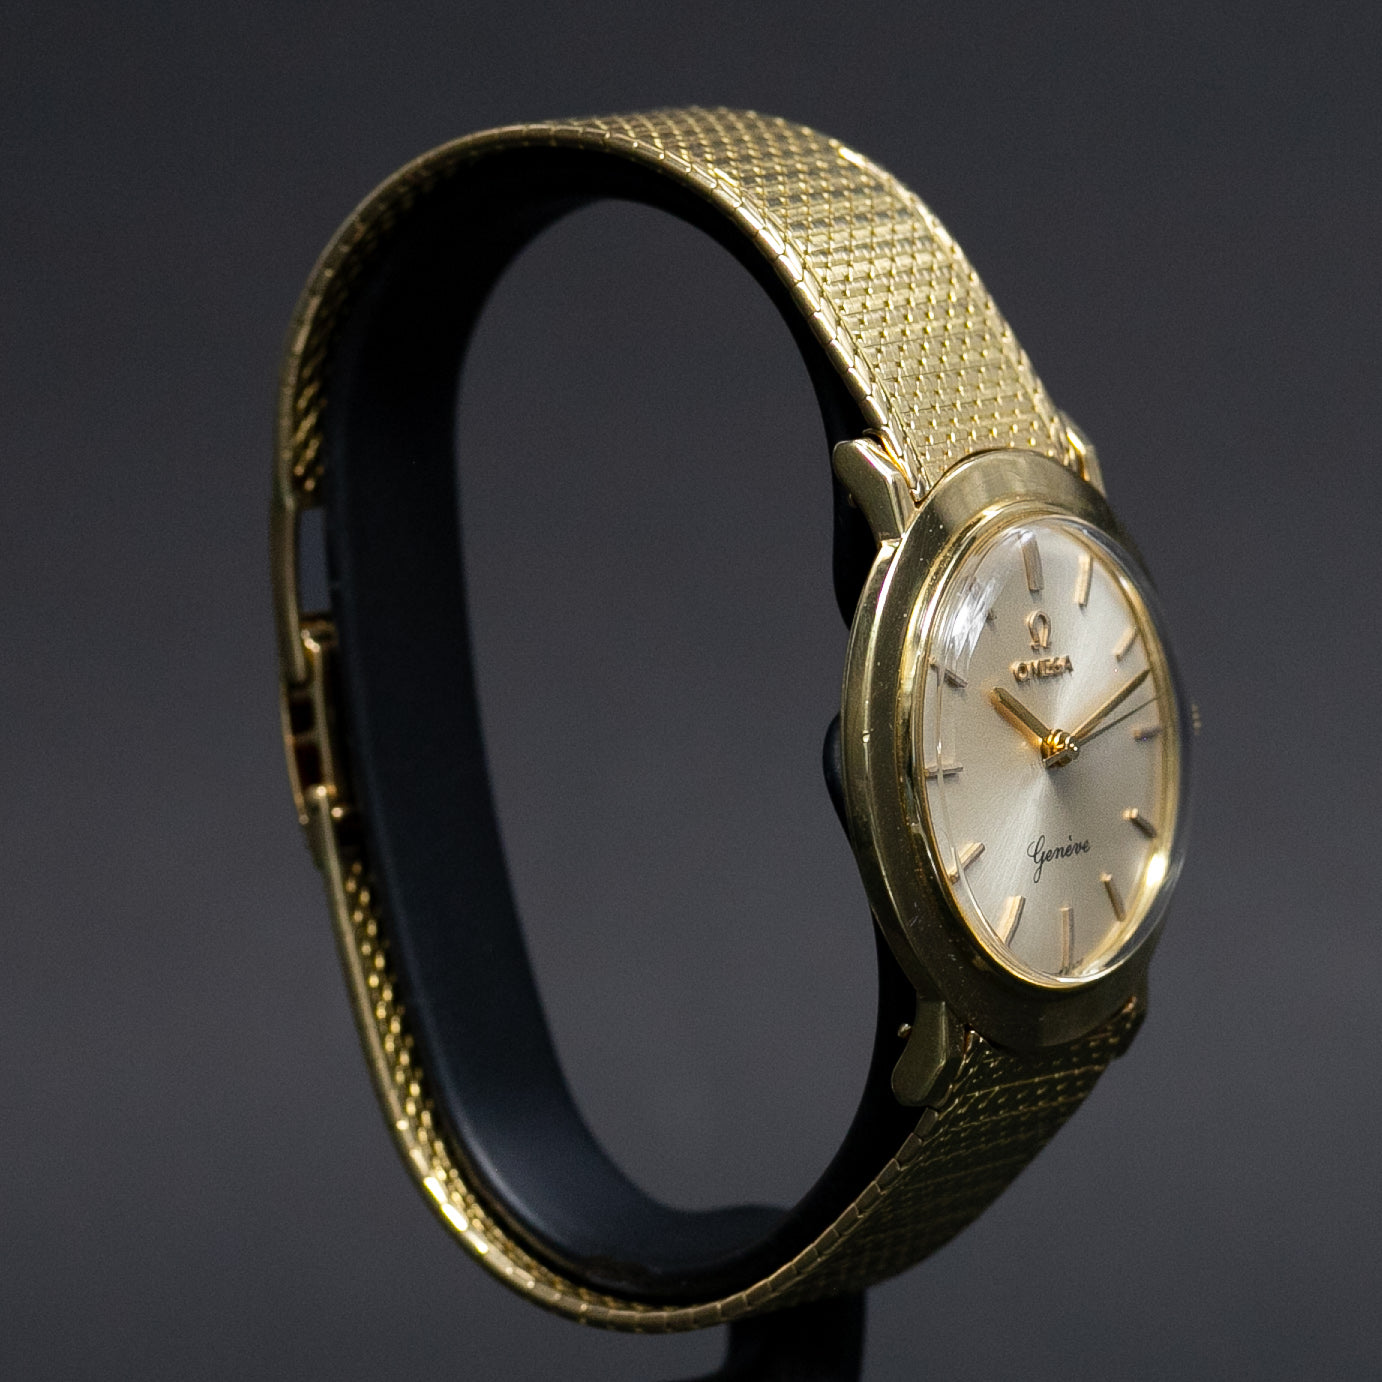 Oméga Genève Soucoupe bracelet en or 15752 SC - L'Atelier du Temps